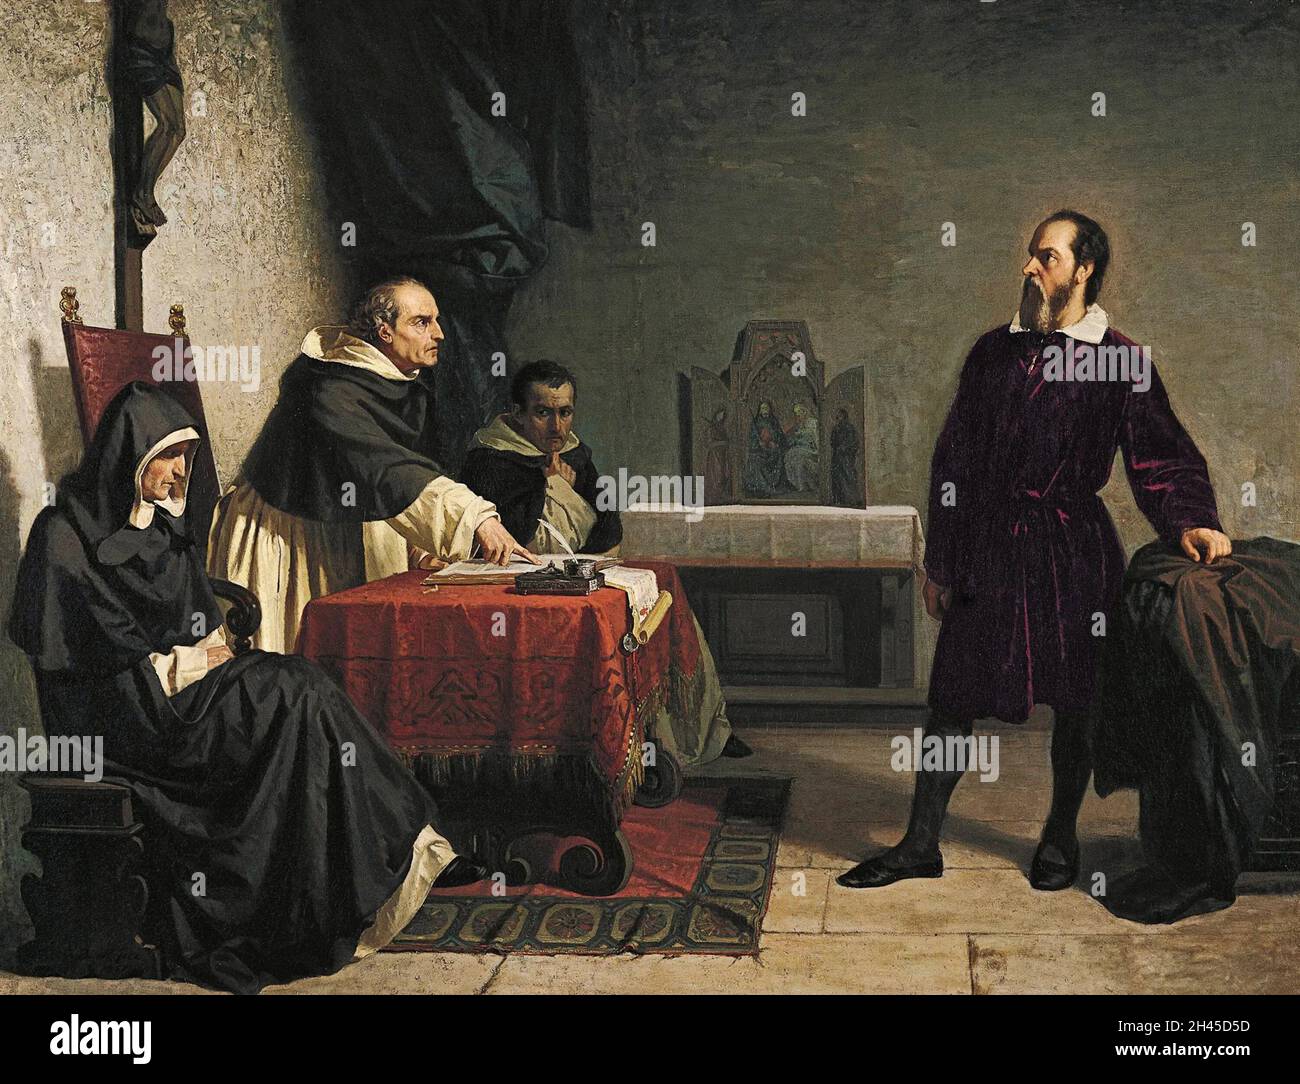 Le physicien et astronome italien Galileo Galilei face à l'Inquisition romaine, accusé d'hérésie sur sa suggestion que le soleil était au centre du système solaire Banque D'Images